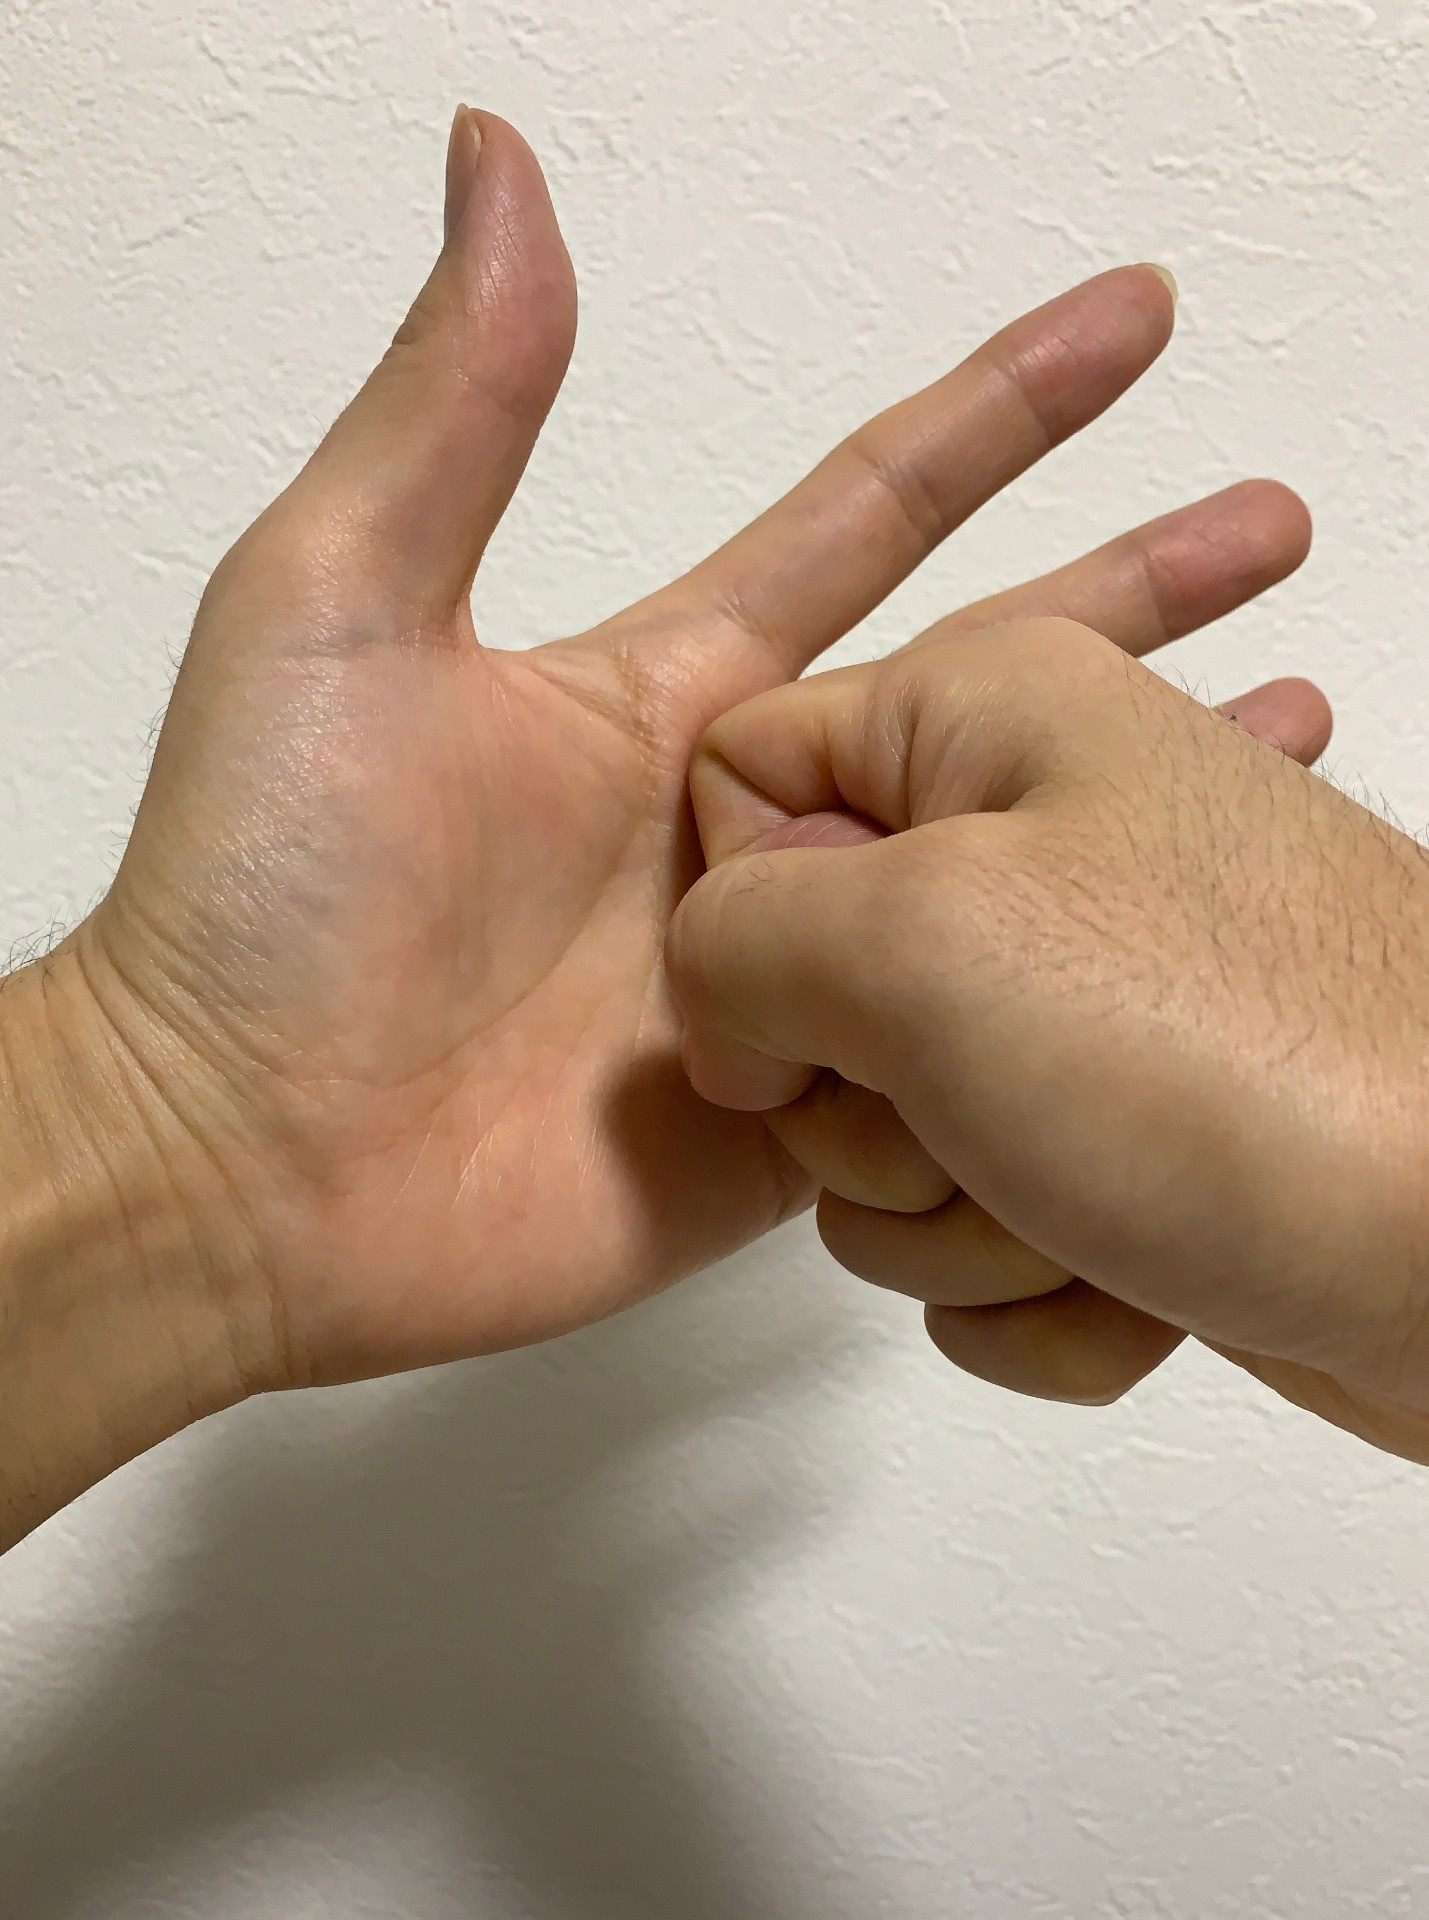 指 テーピング ばね 中指がばね指になったときのテーピングの巻き方などについて